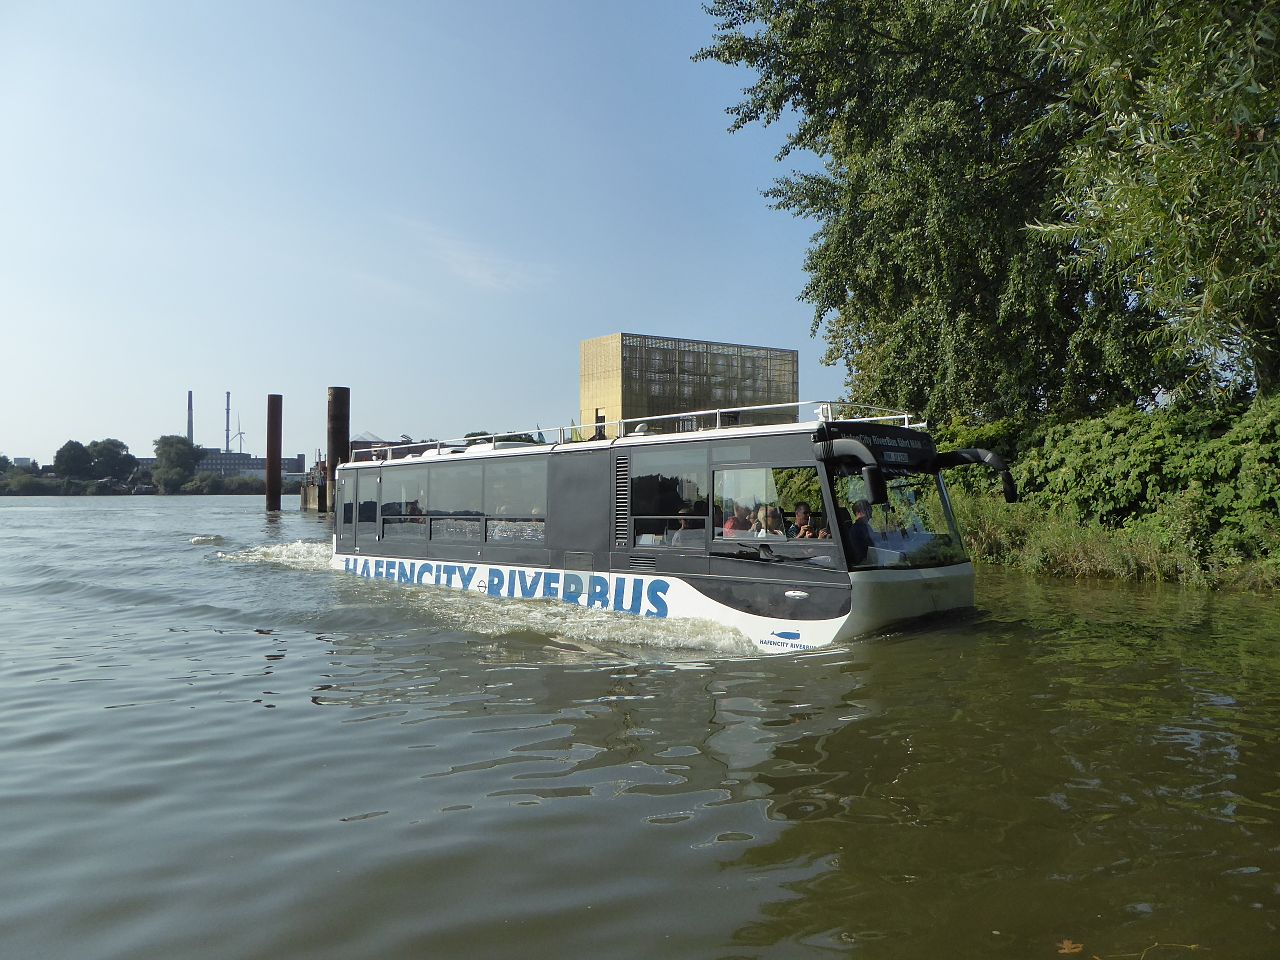 HafenCity Riverbus - bus yang bisa melaju didarat dan di atas air